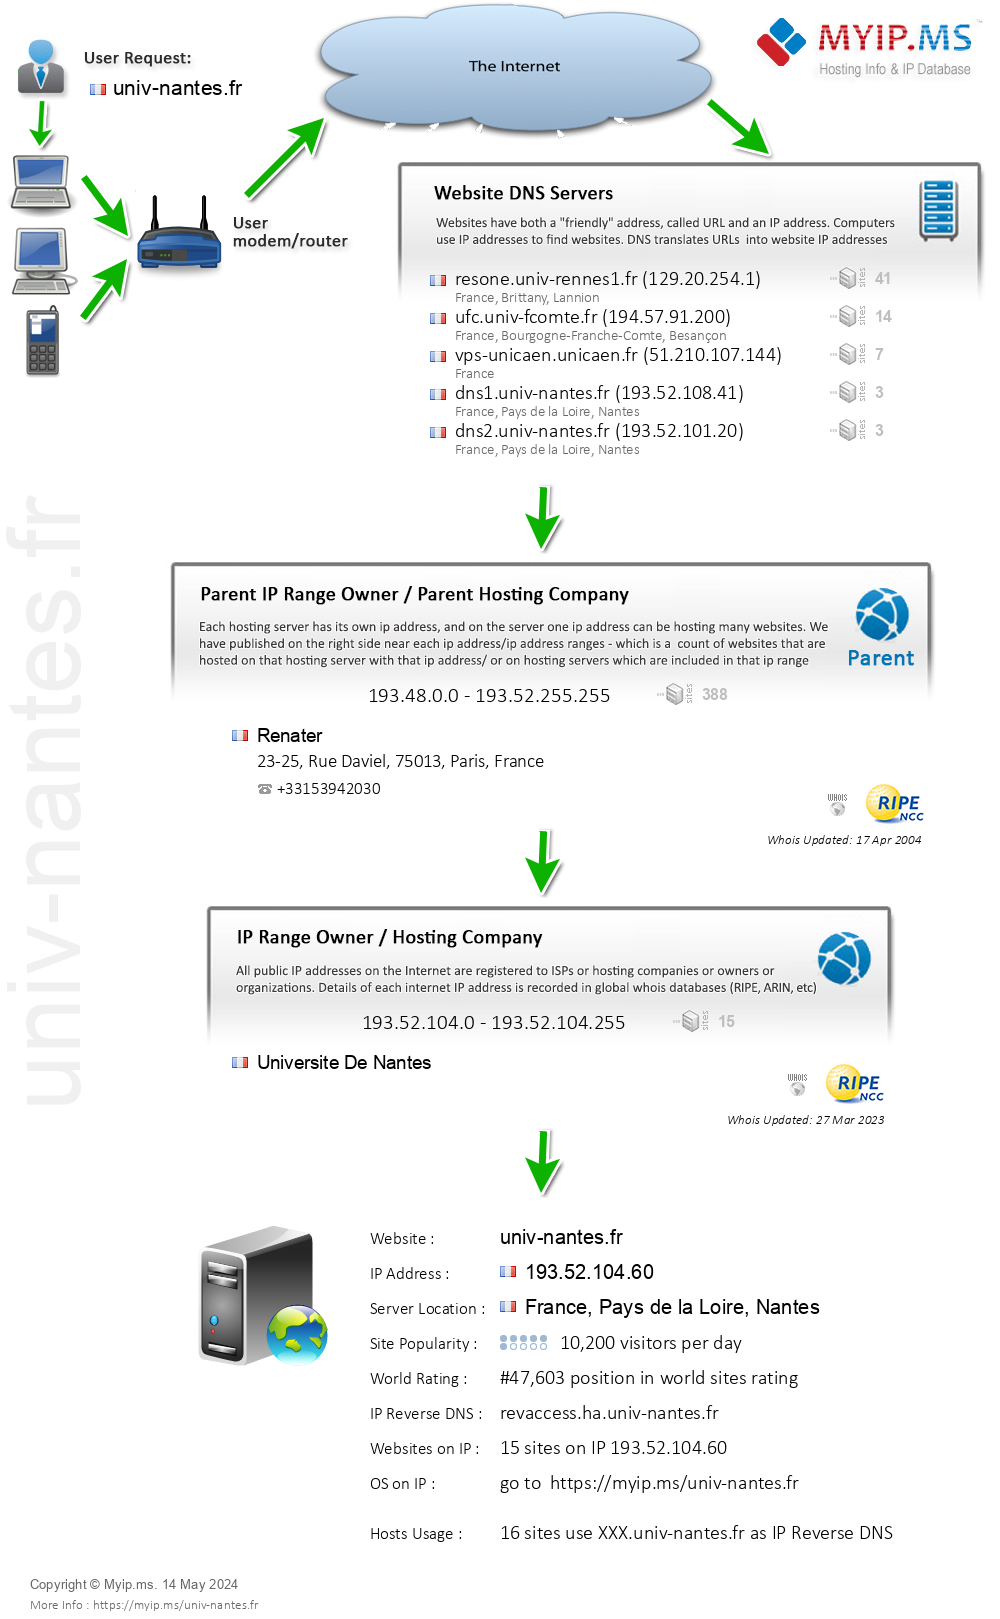 Univ-nantes.fr - Website Hosting Visual IP Diagram